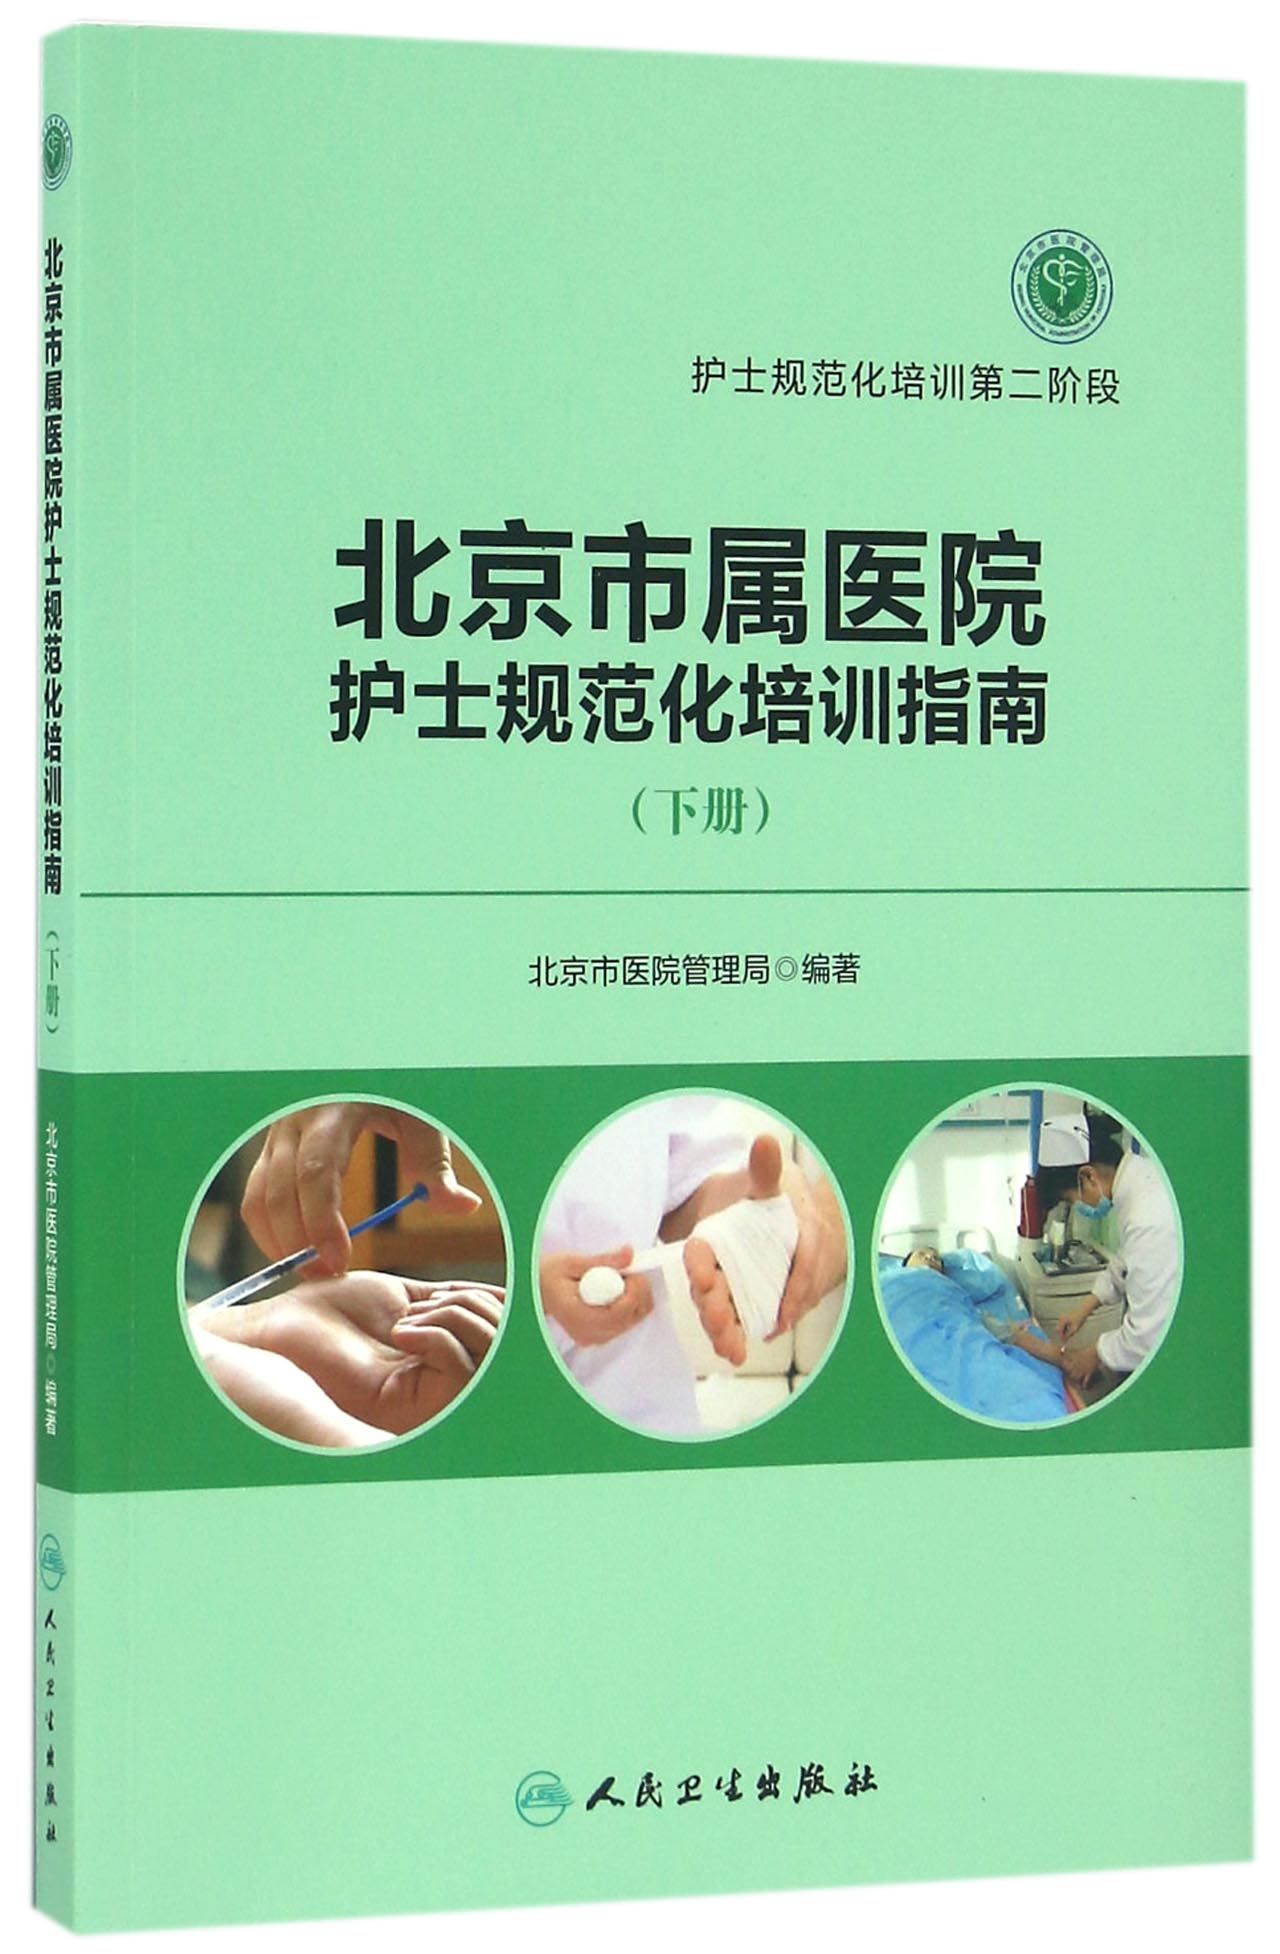 北京市属医院护士规范化培训指南（下册）